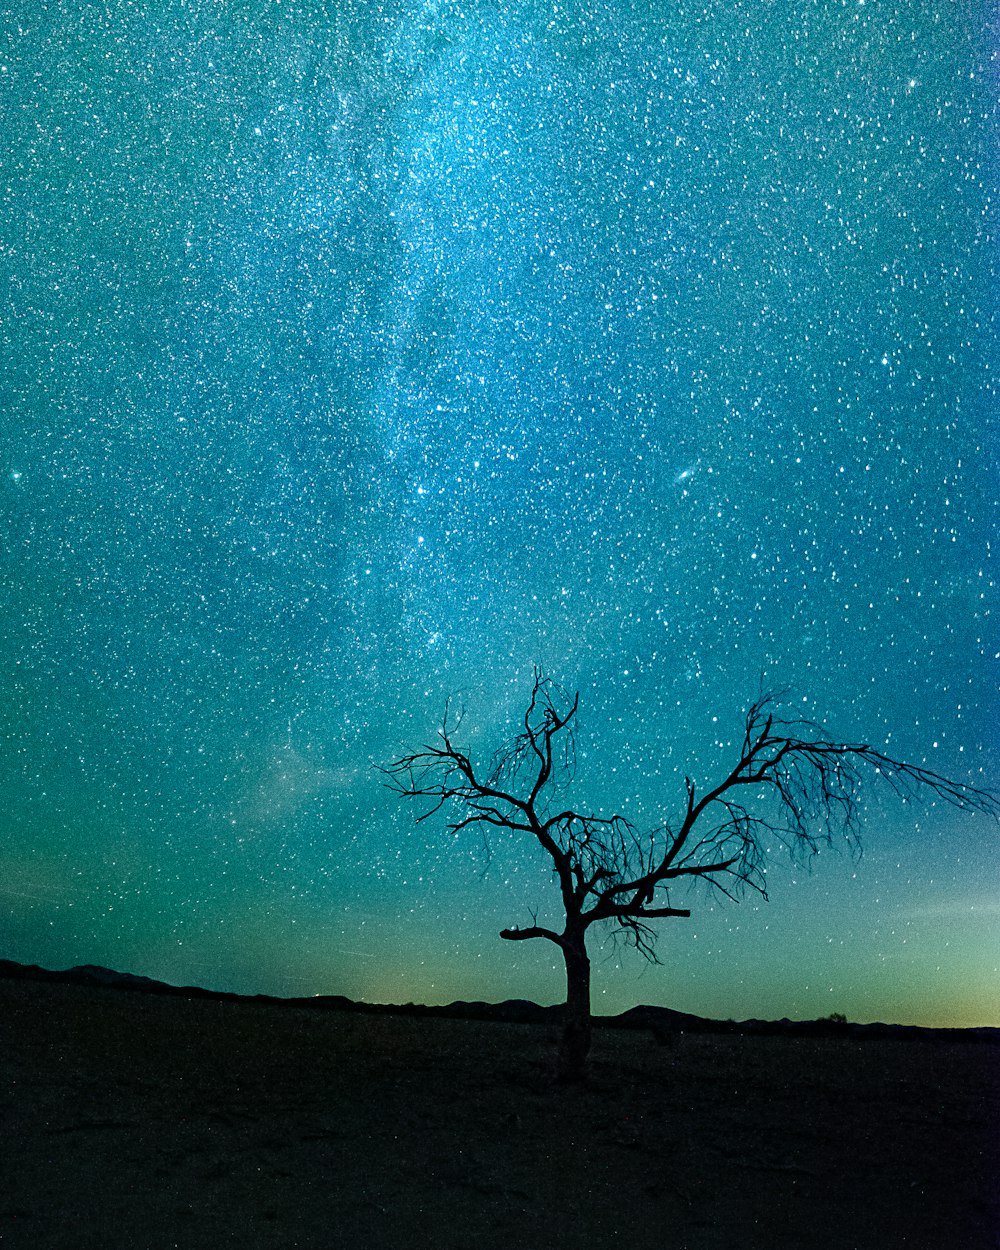 albero spoglio sotto la notte stellata